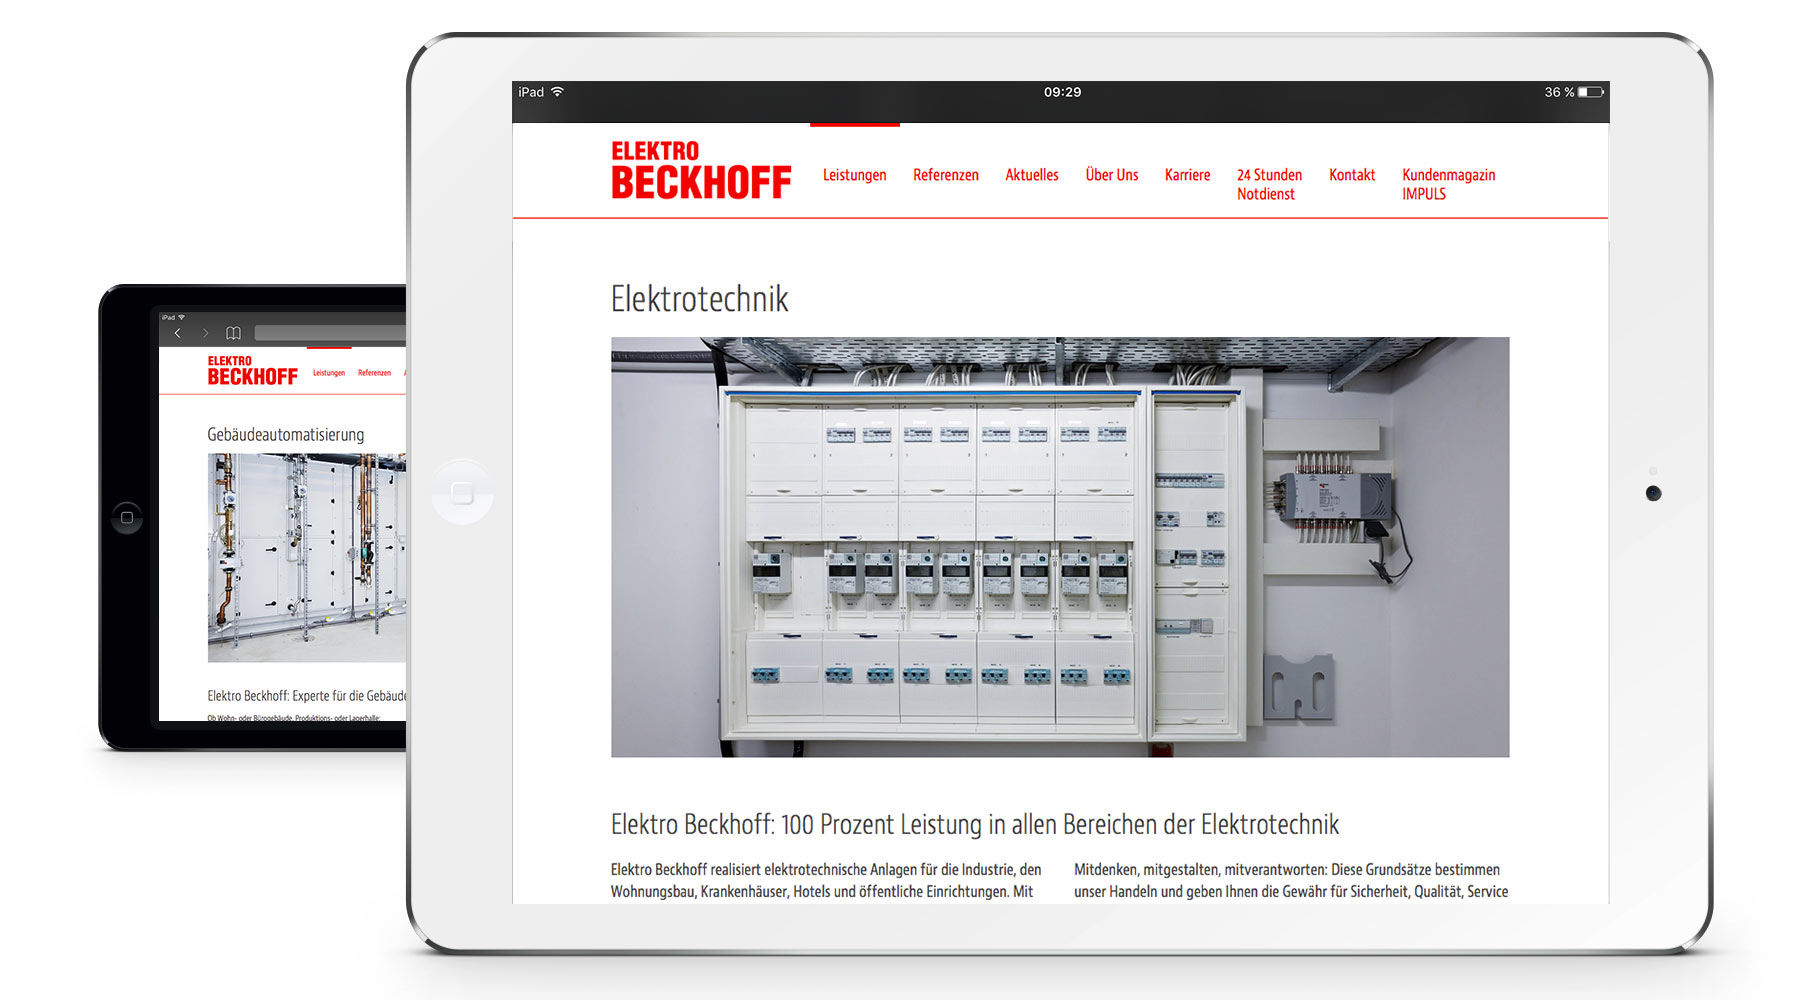 ELEKTRO BECKHOFF – Website optimiert auch für Smartphones und Tablets